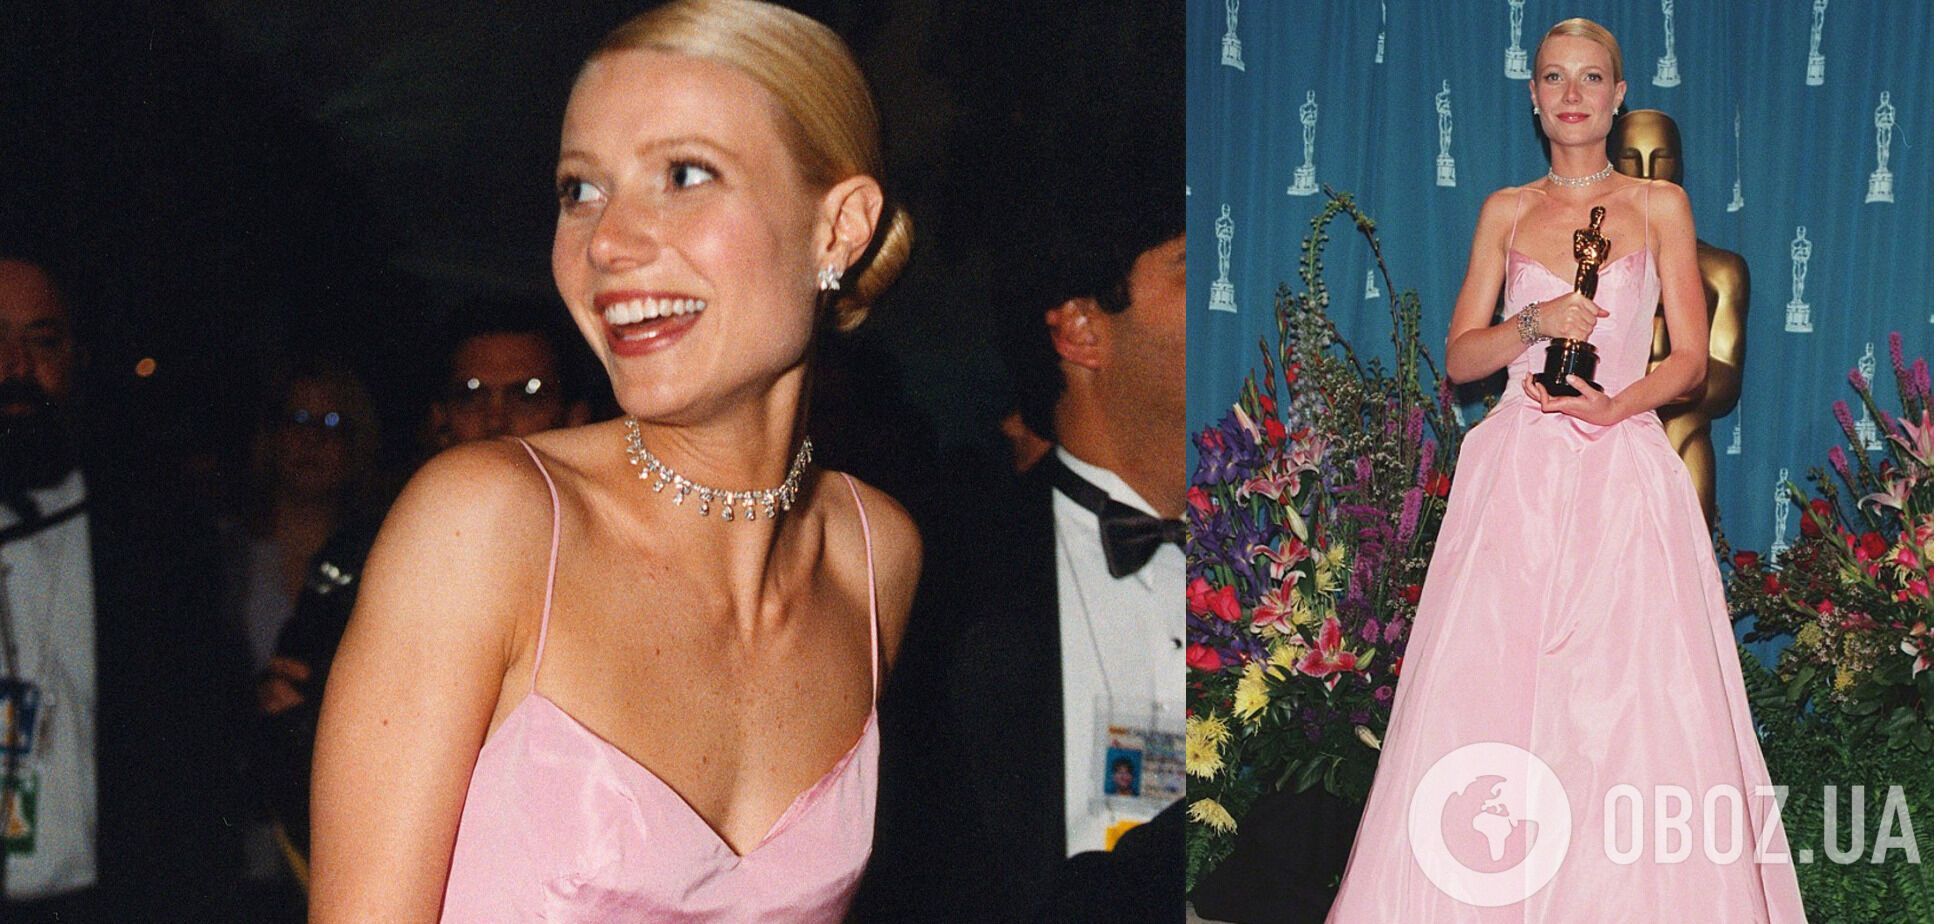 Гвинет Пэлтроу в 1999 году получила "Оскар" в нежном розовом платье.